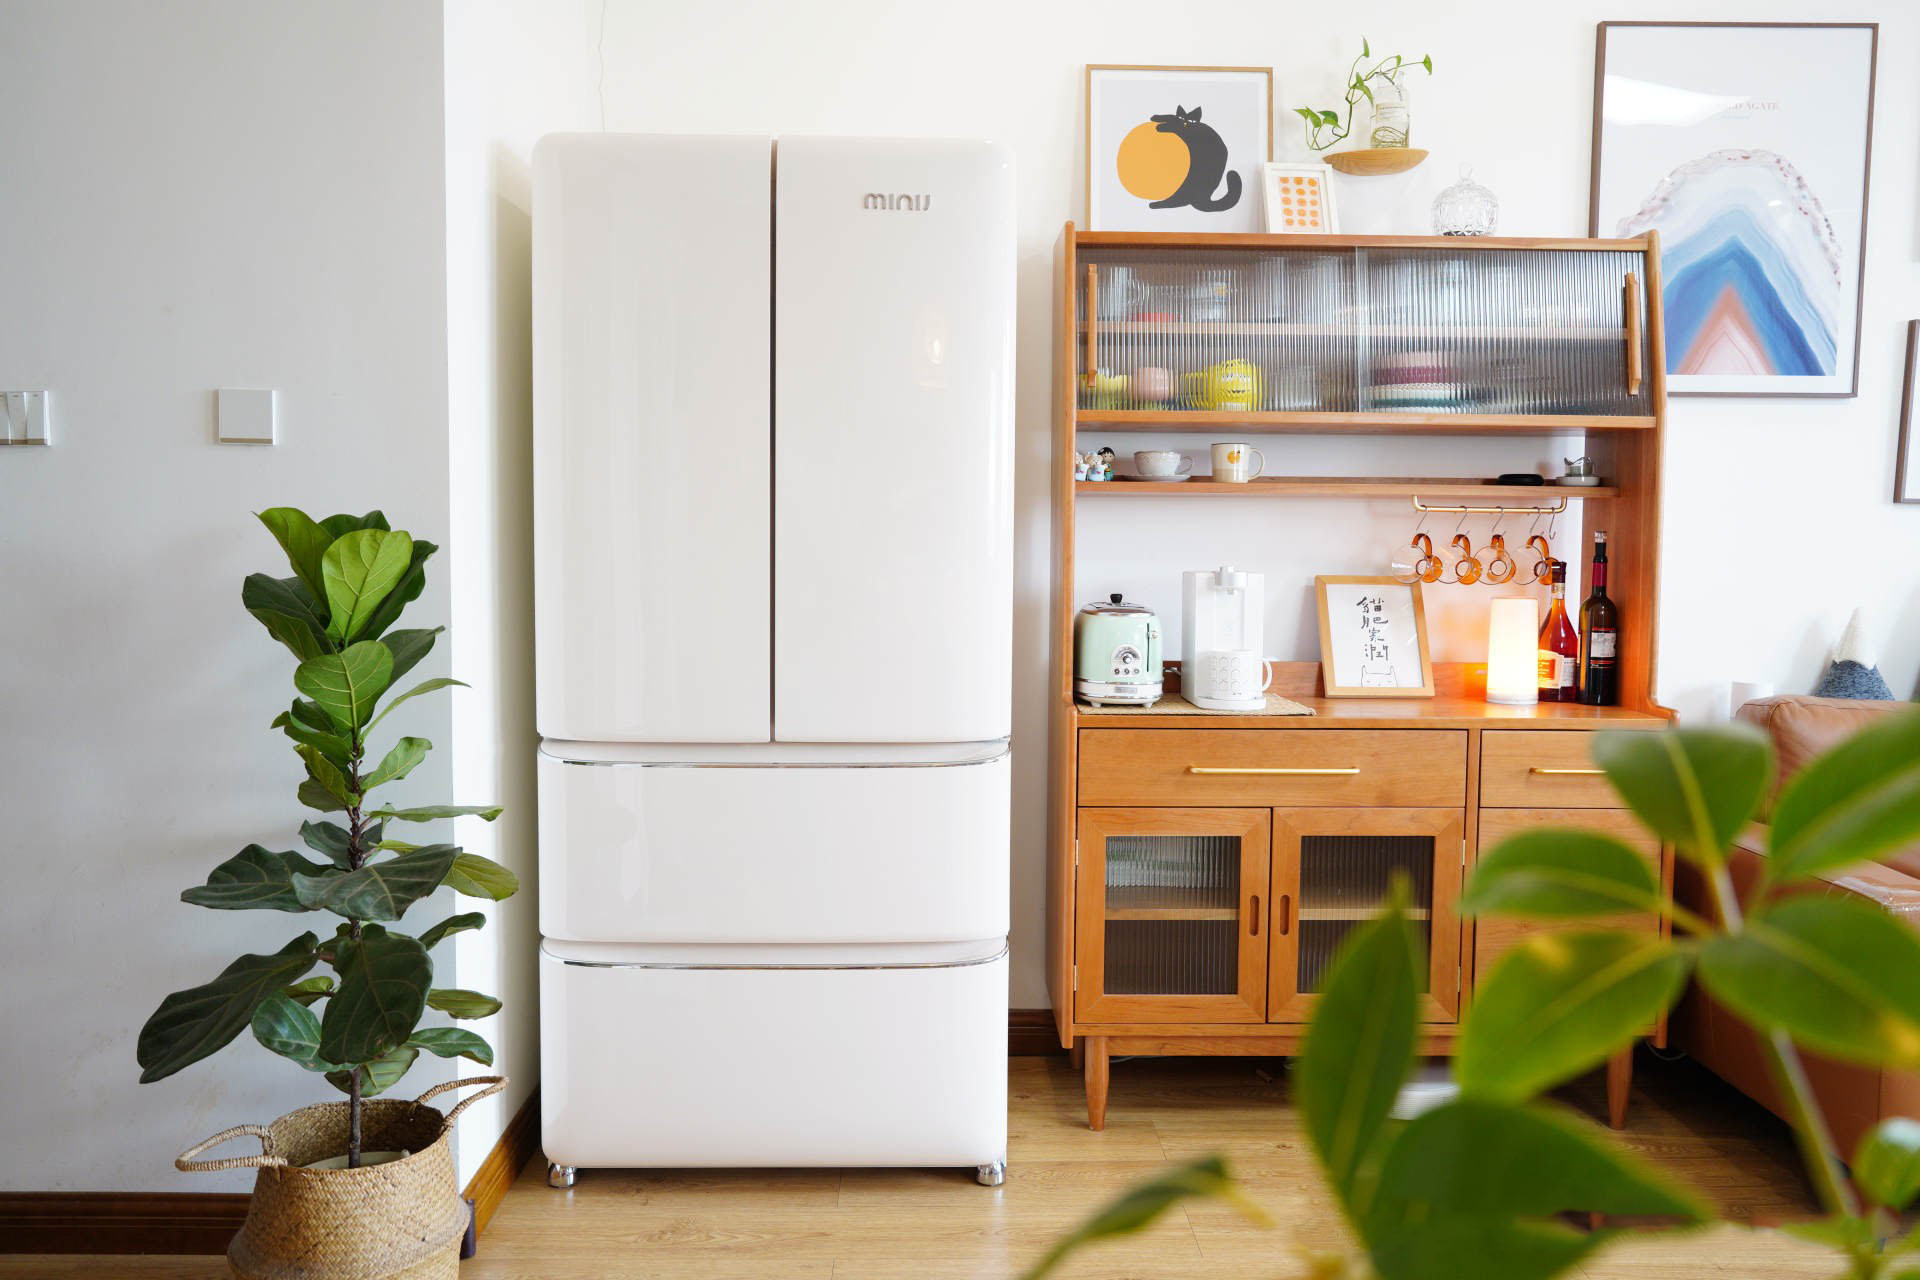 Review nhanh mẫu tủ lạnh gia đình phong cách retro đẹp ngang ngửa Smeg mà giá thì chưa đến một nửa - Ảnh 3.